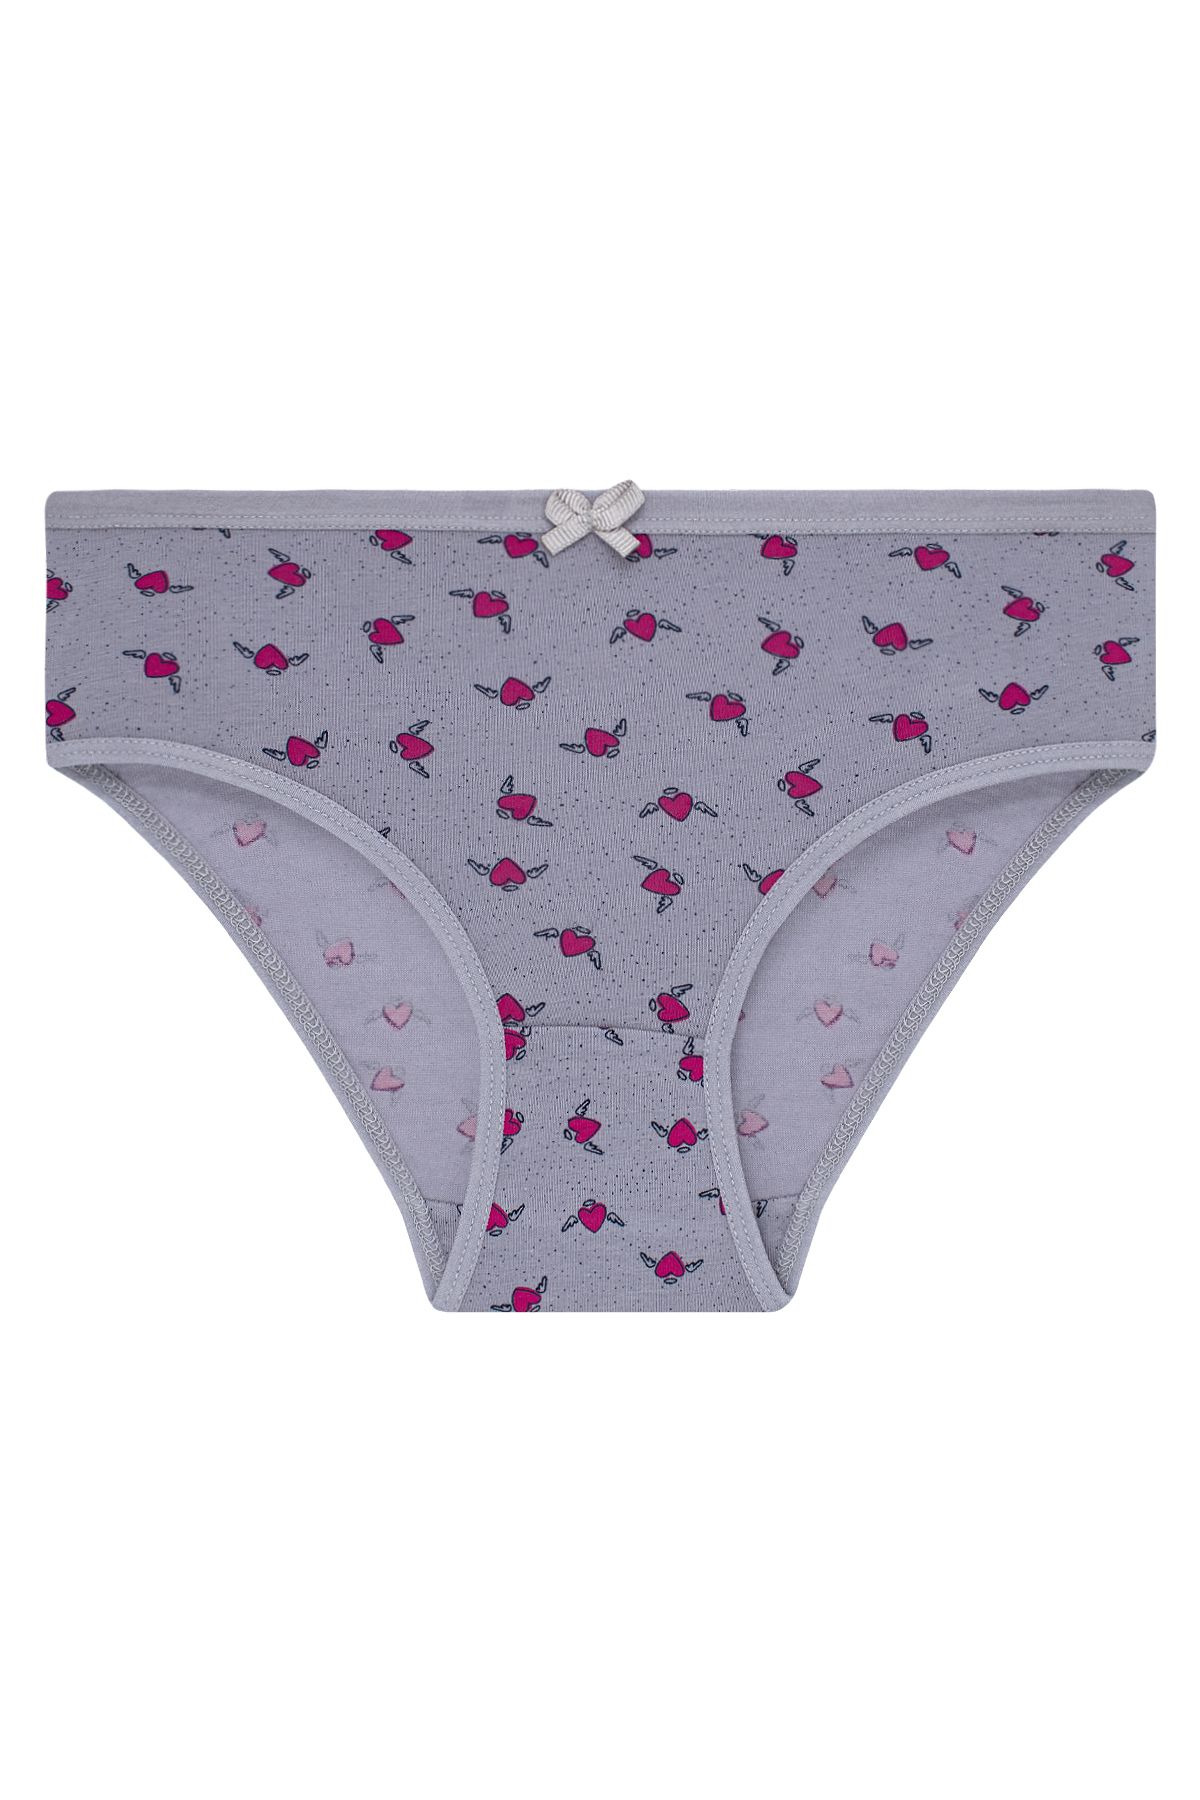 biyokids Girl's 5 Pack Colorful Slip Panties - Trendyol